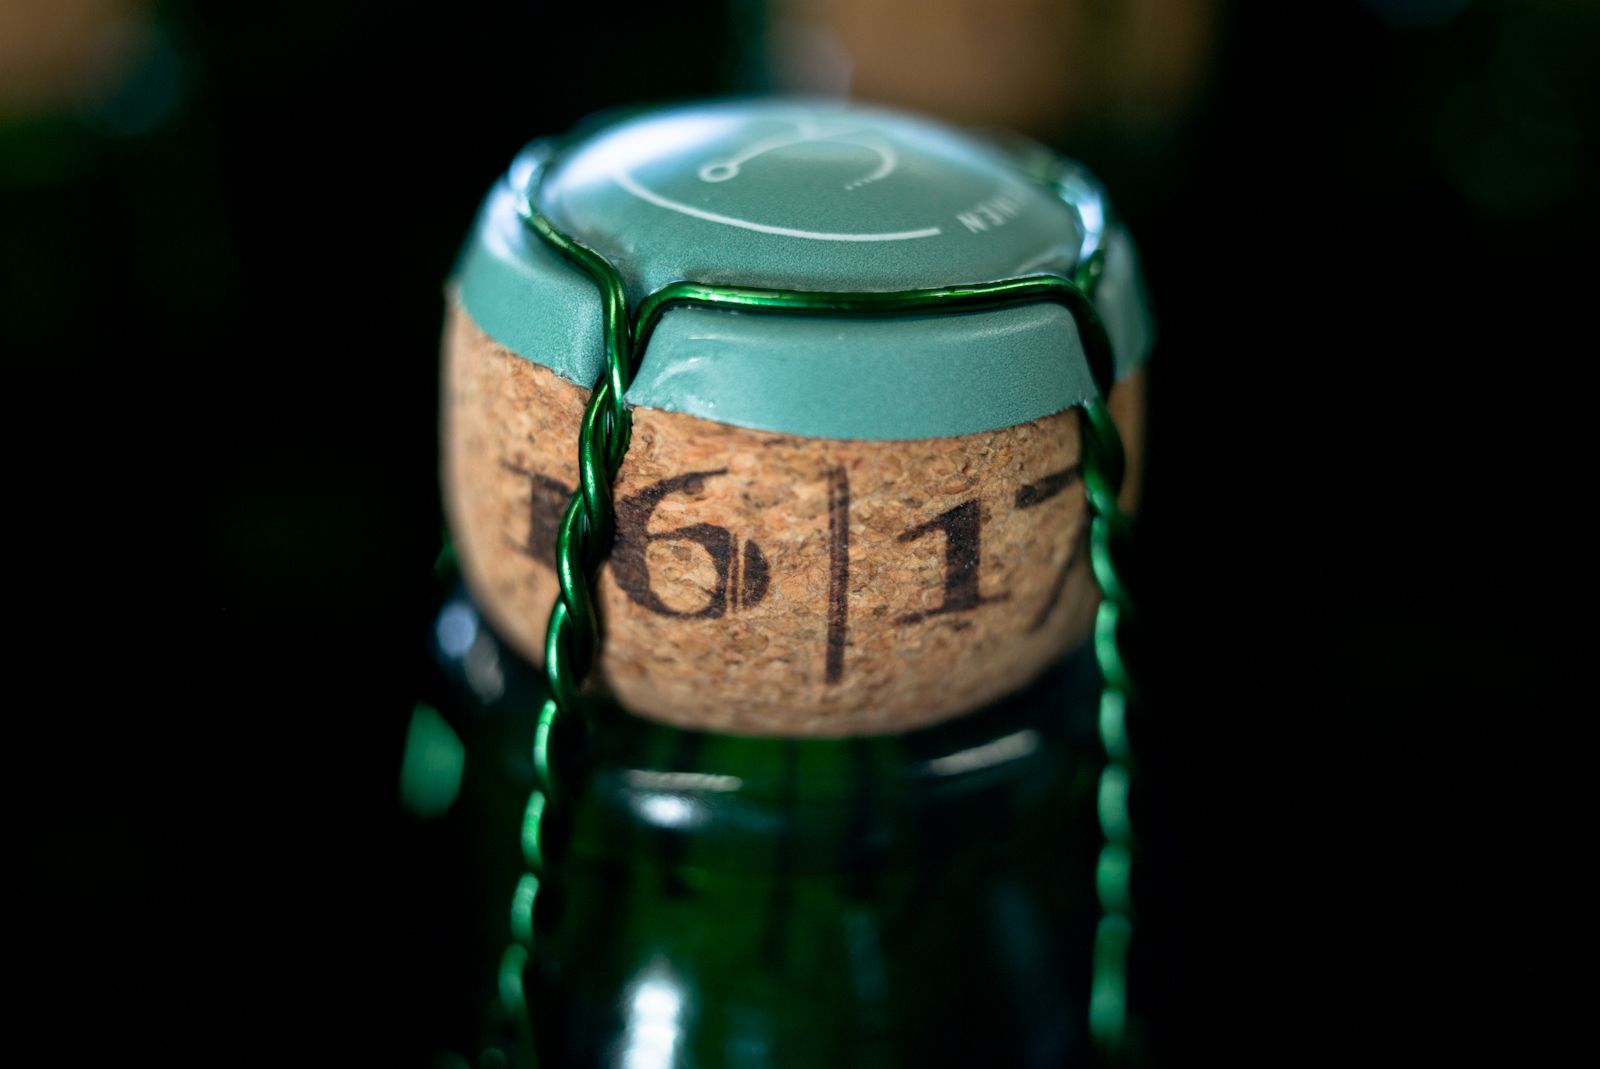 Le bouchon indique la saison à laquelle la bière a été mise en bouteille.